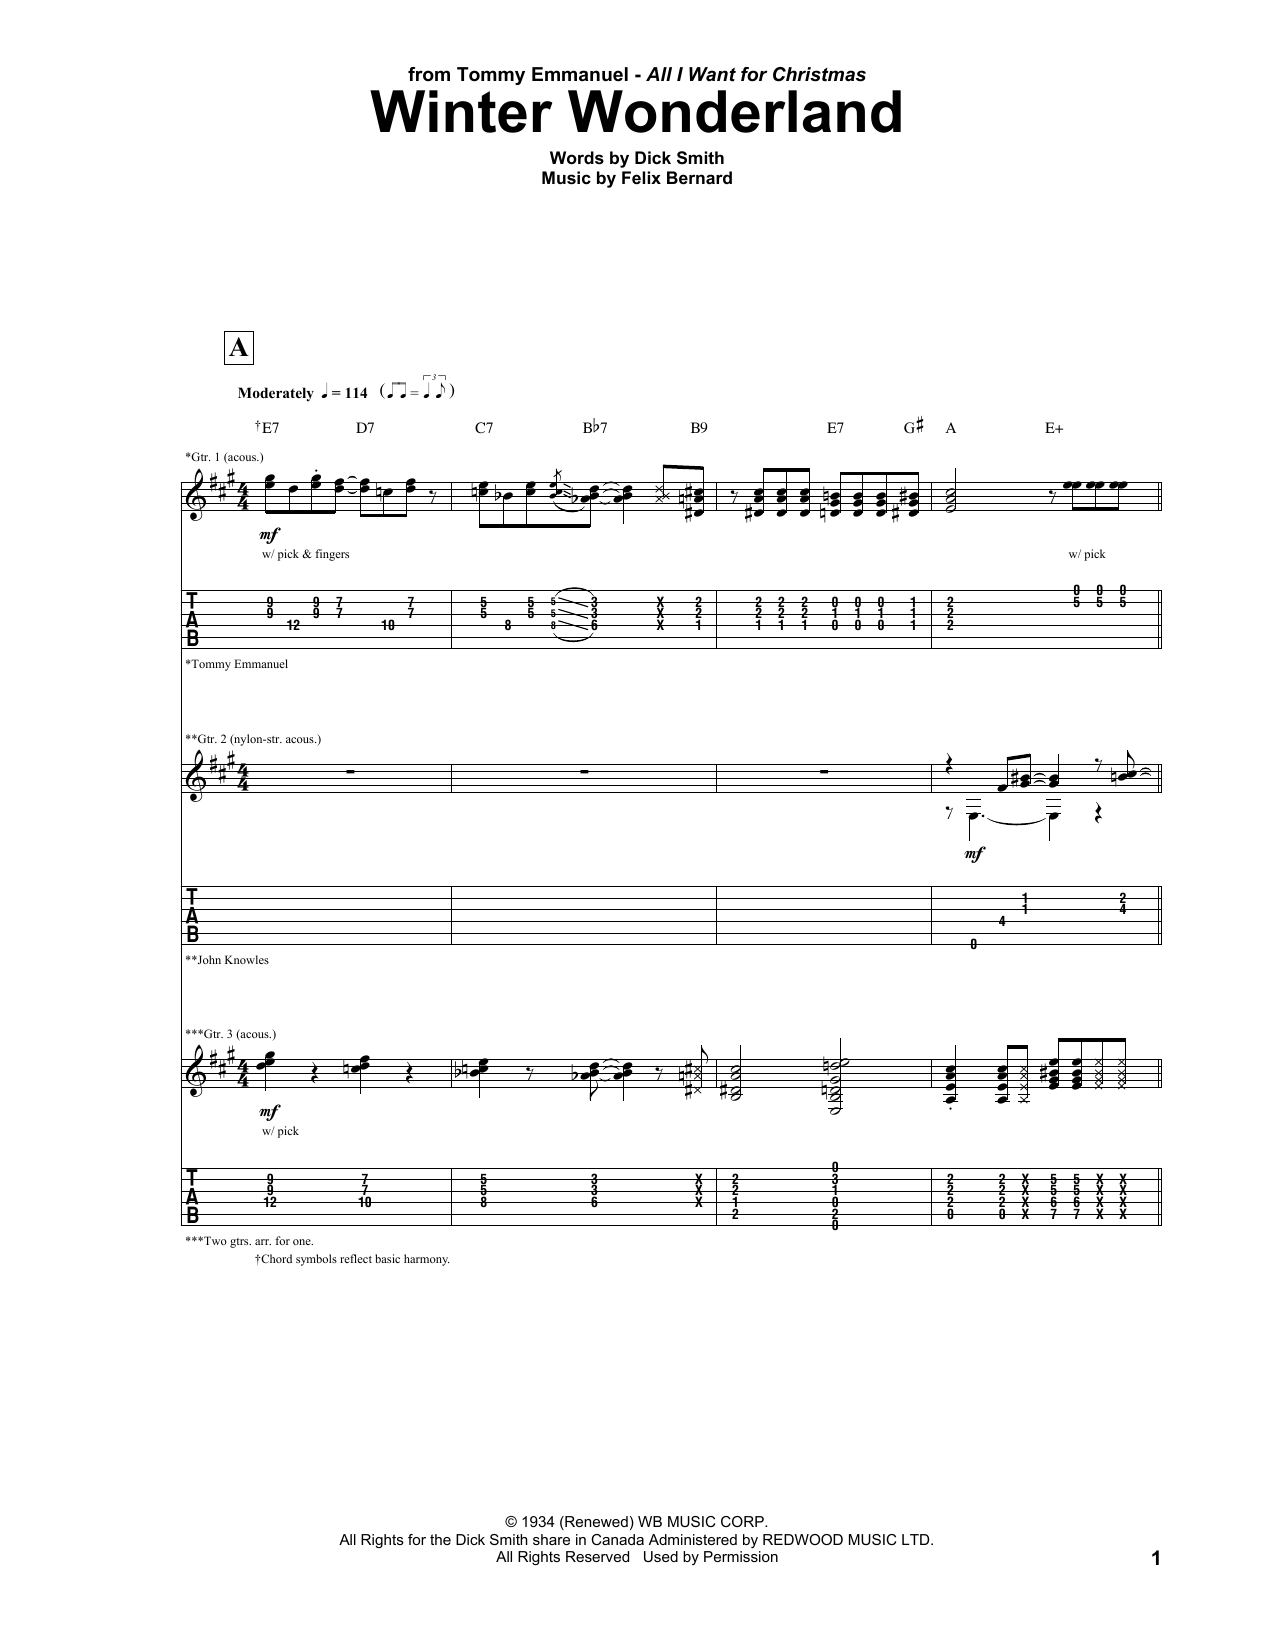 Tommy Emmanuel Winter Wonderland Sheet Music Notes & Chords for Guitar Tab - Download or Print PDF